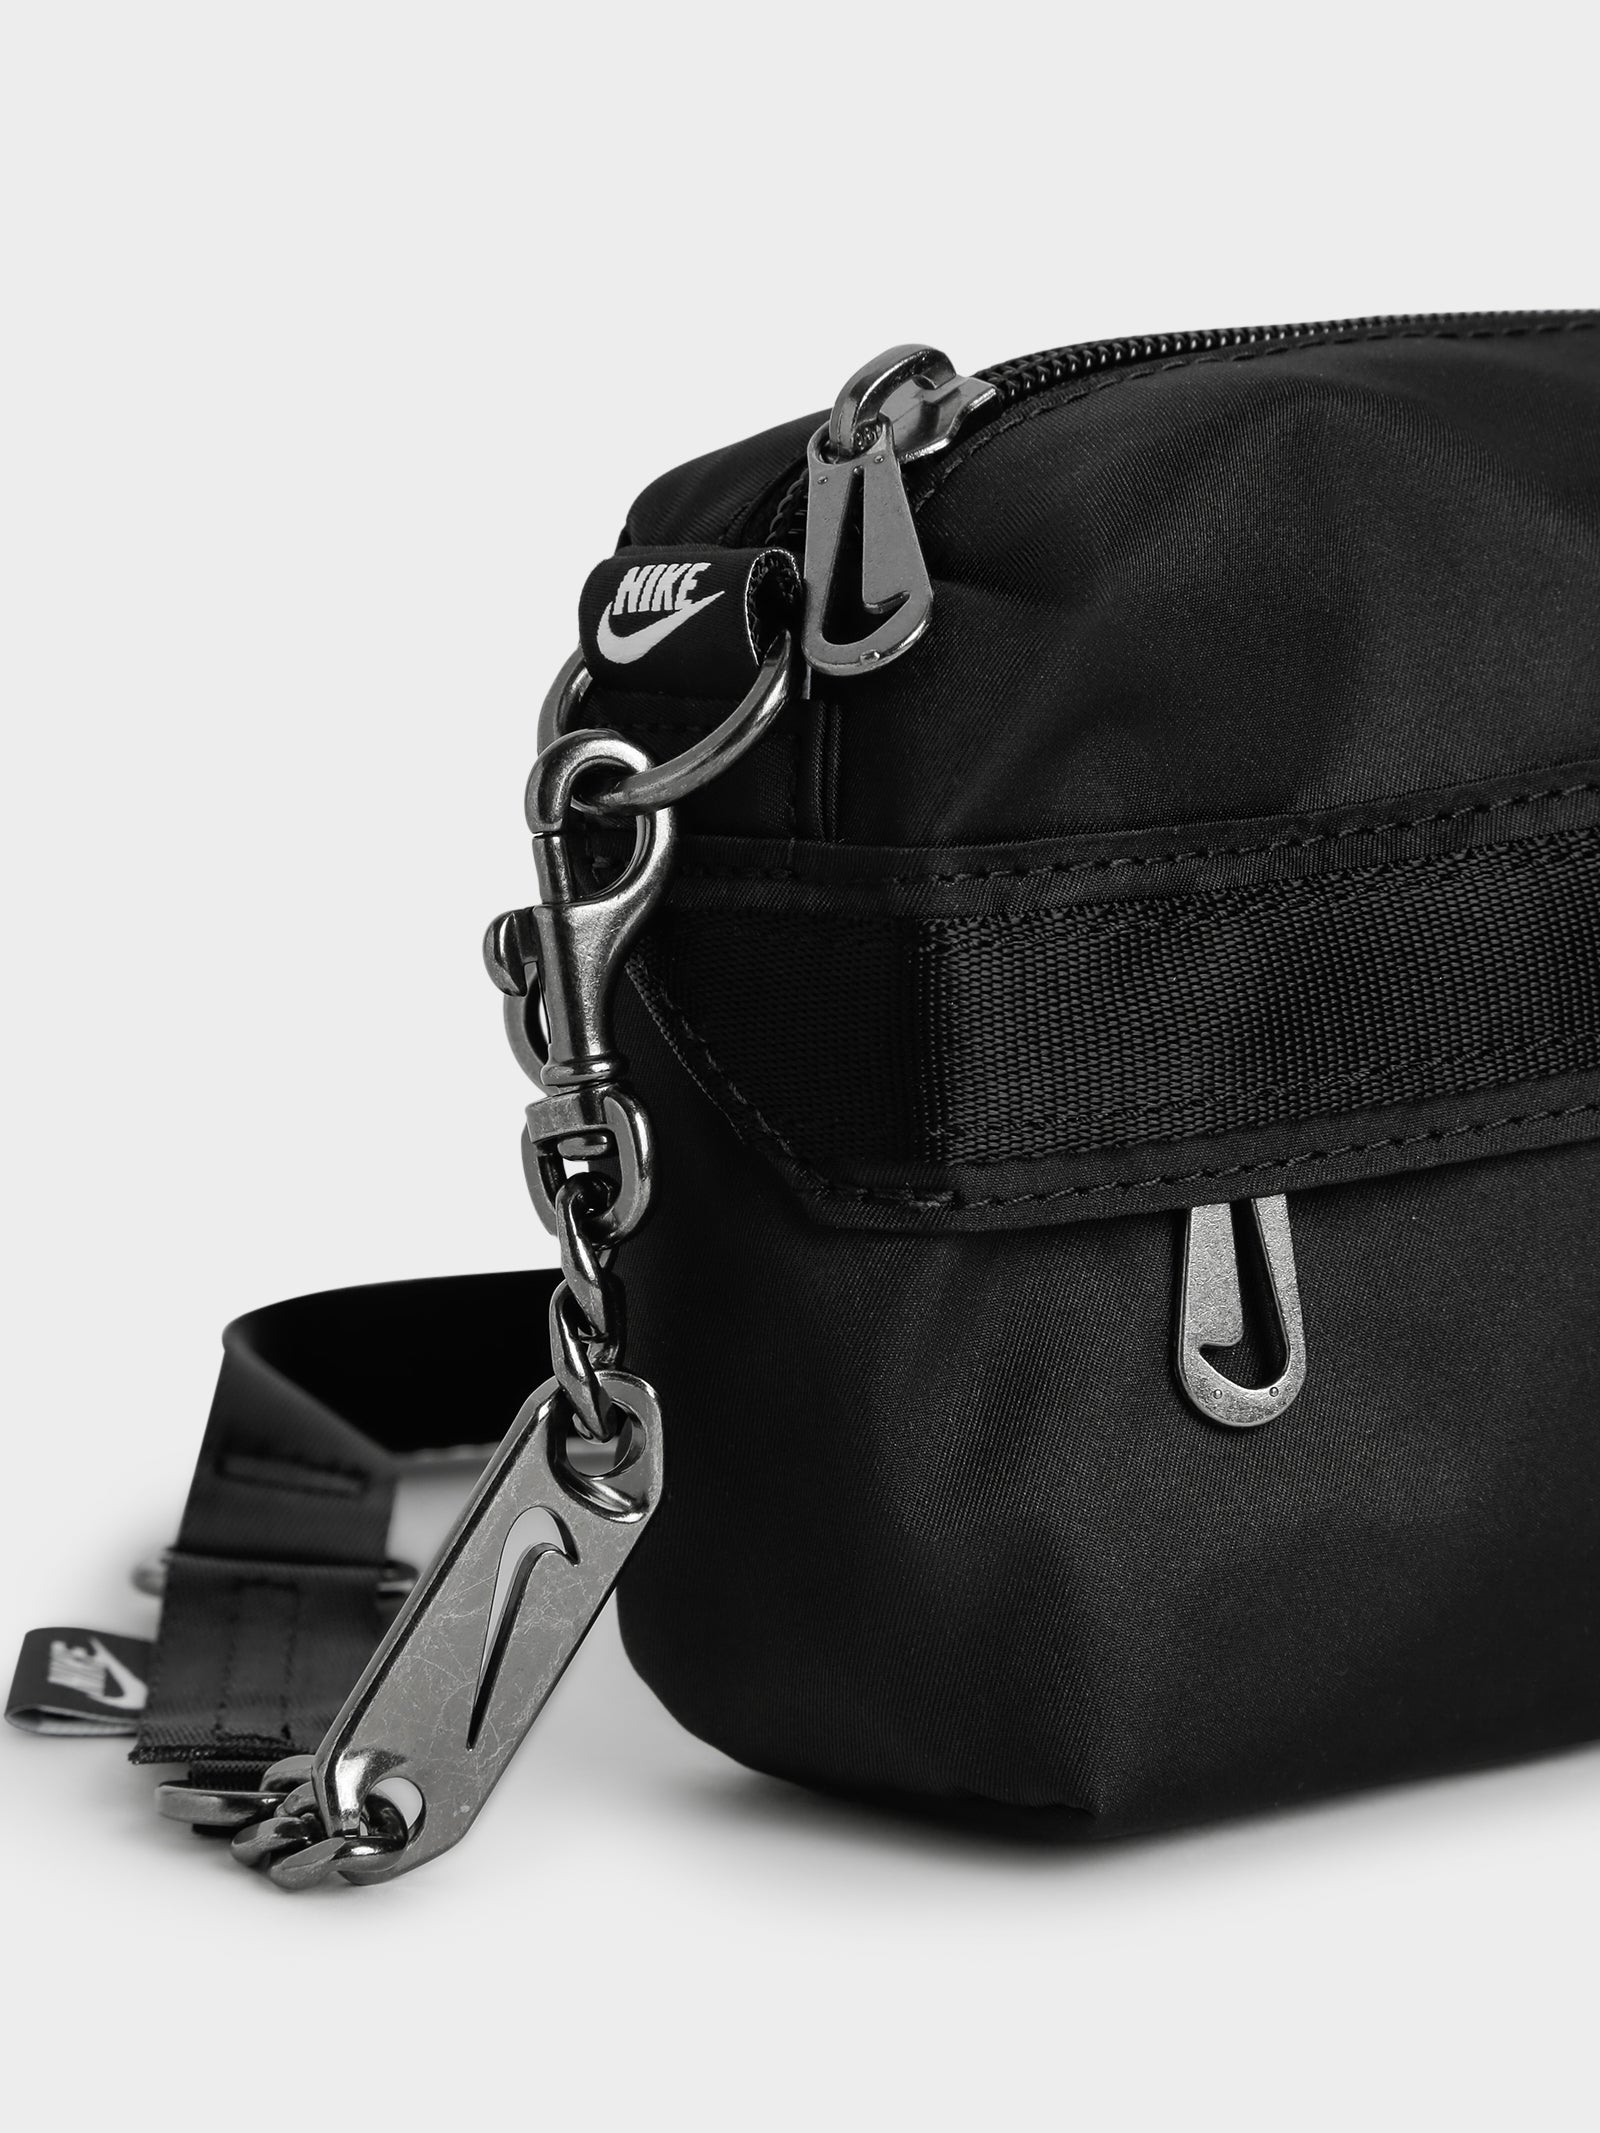 NIKE NSW Women's Futura LUXE Pouch Crossbody Shoulder Bag